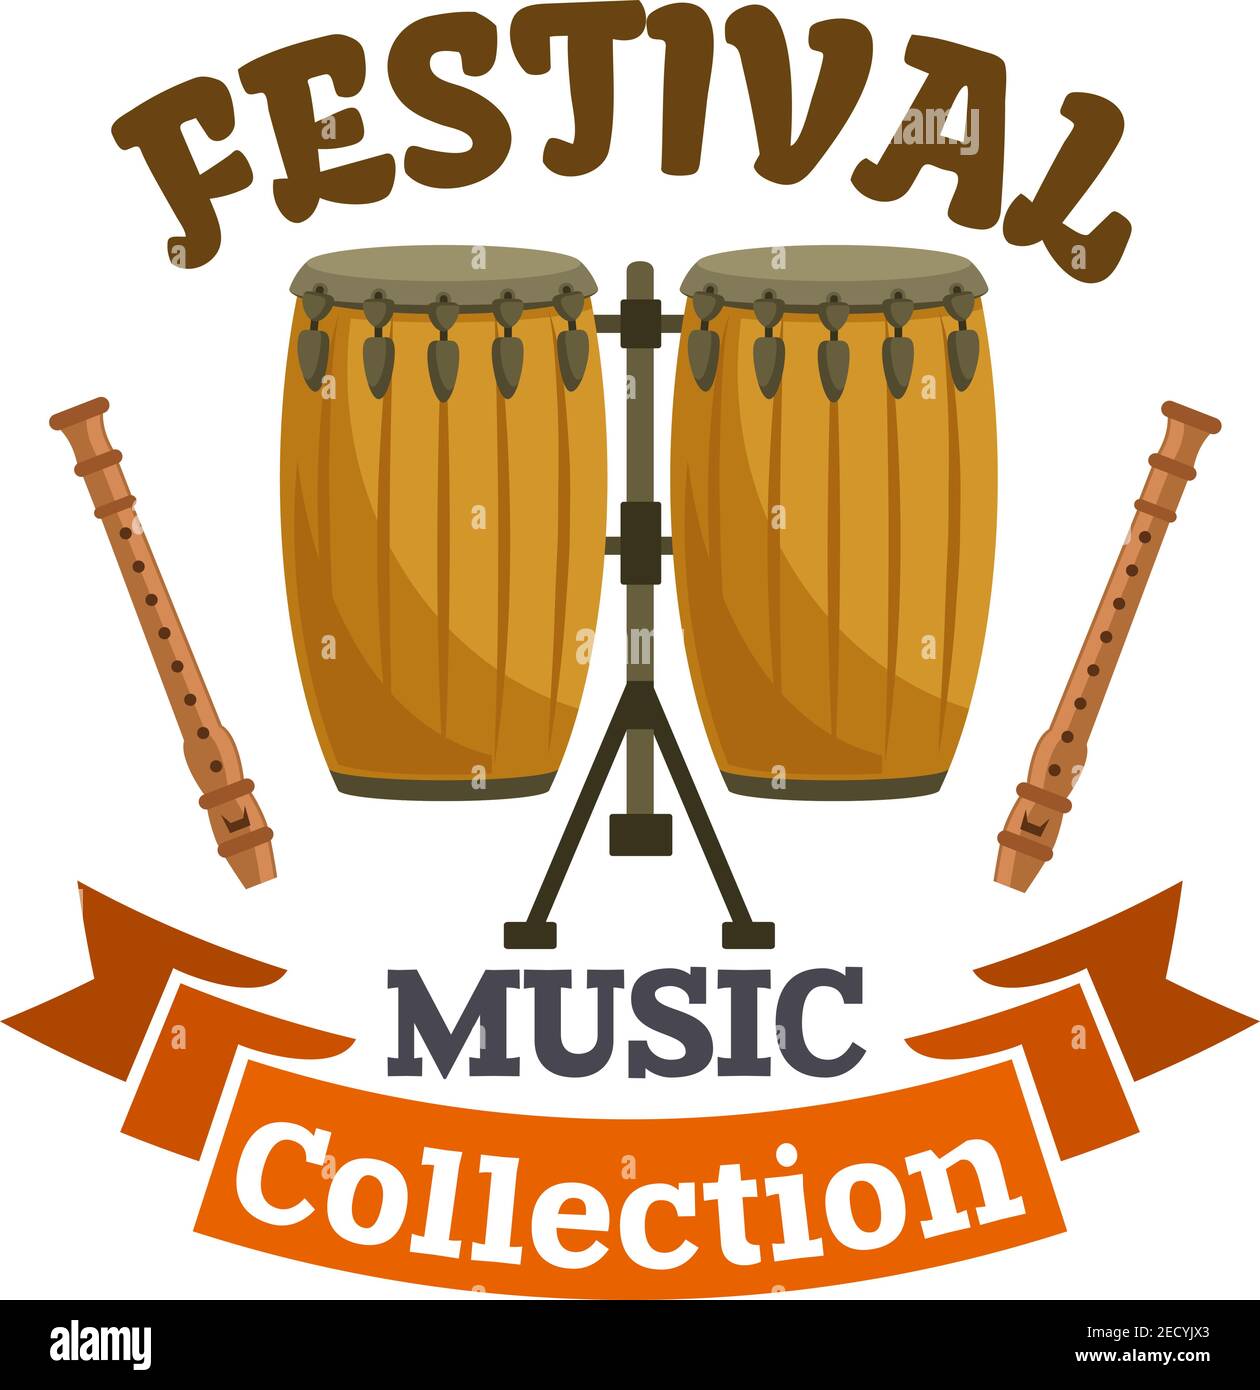 Batterie musicale. Emblème du festival de musique avec symbole vectoriel de cuban, kit de batterie de conga africaine, bâtons de tambour et ruban marron Illustration de Vecteur